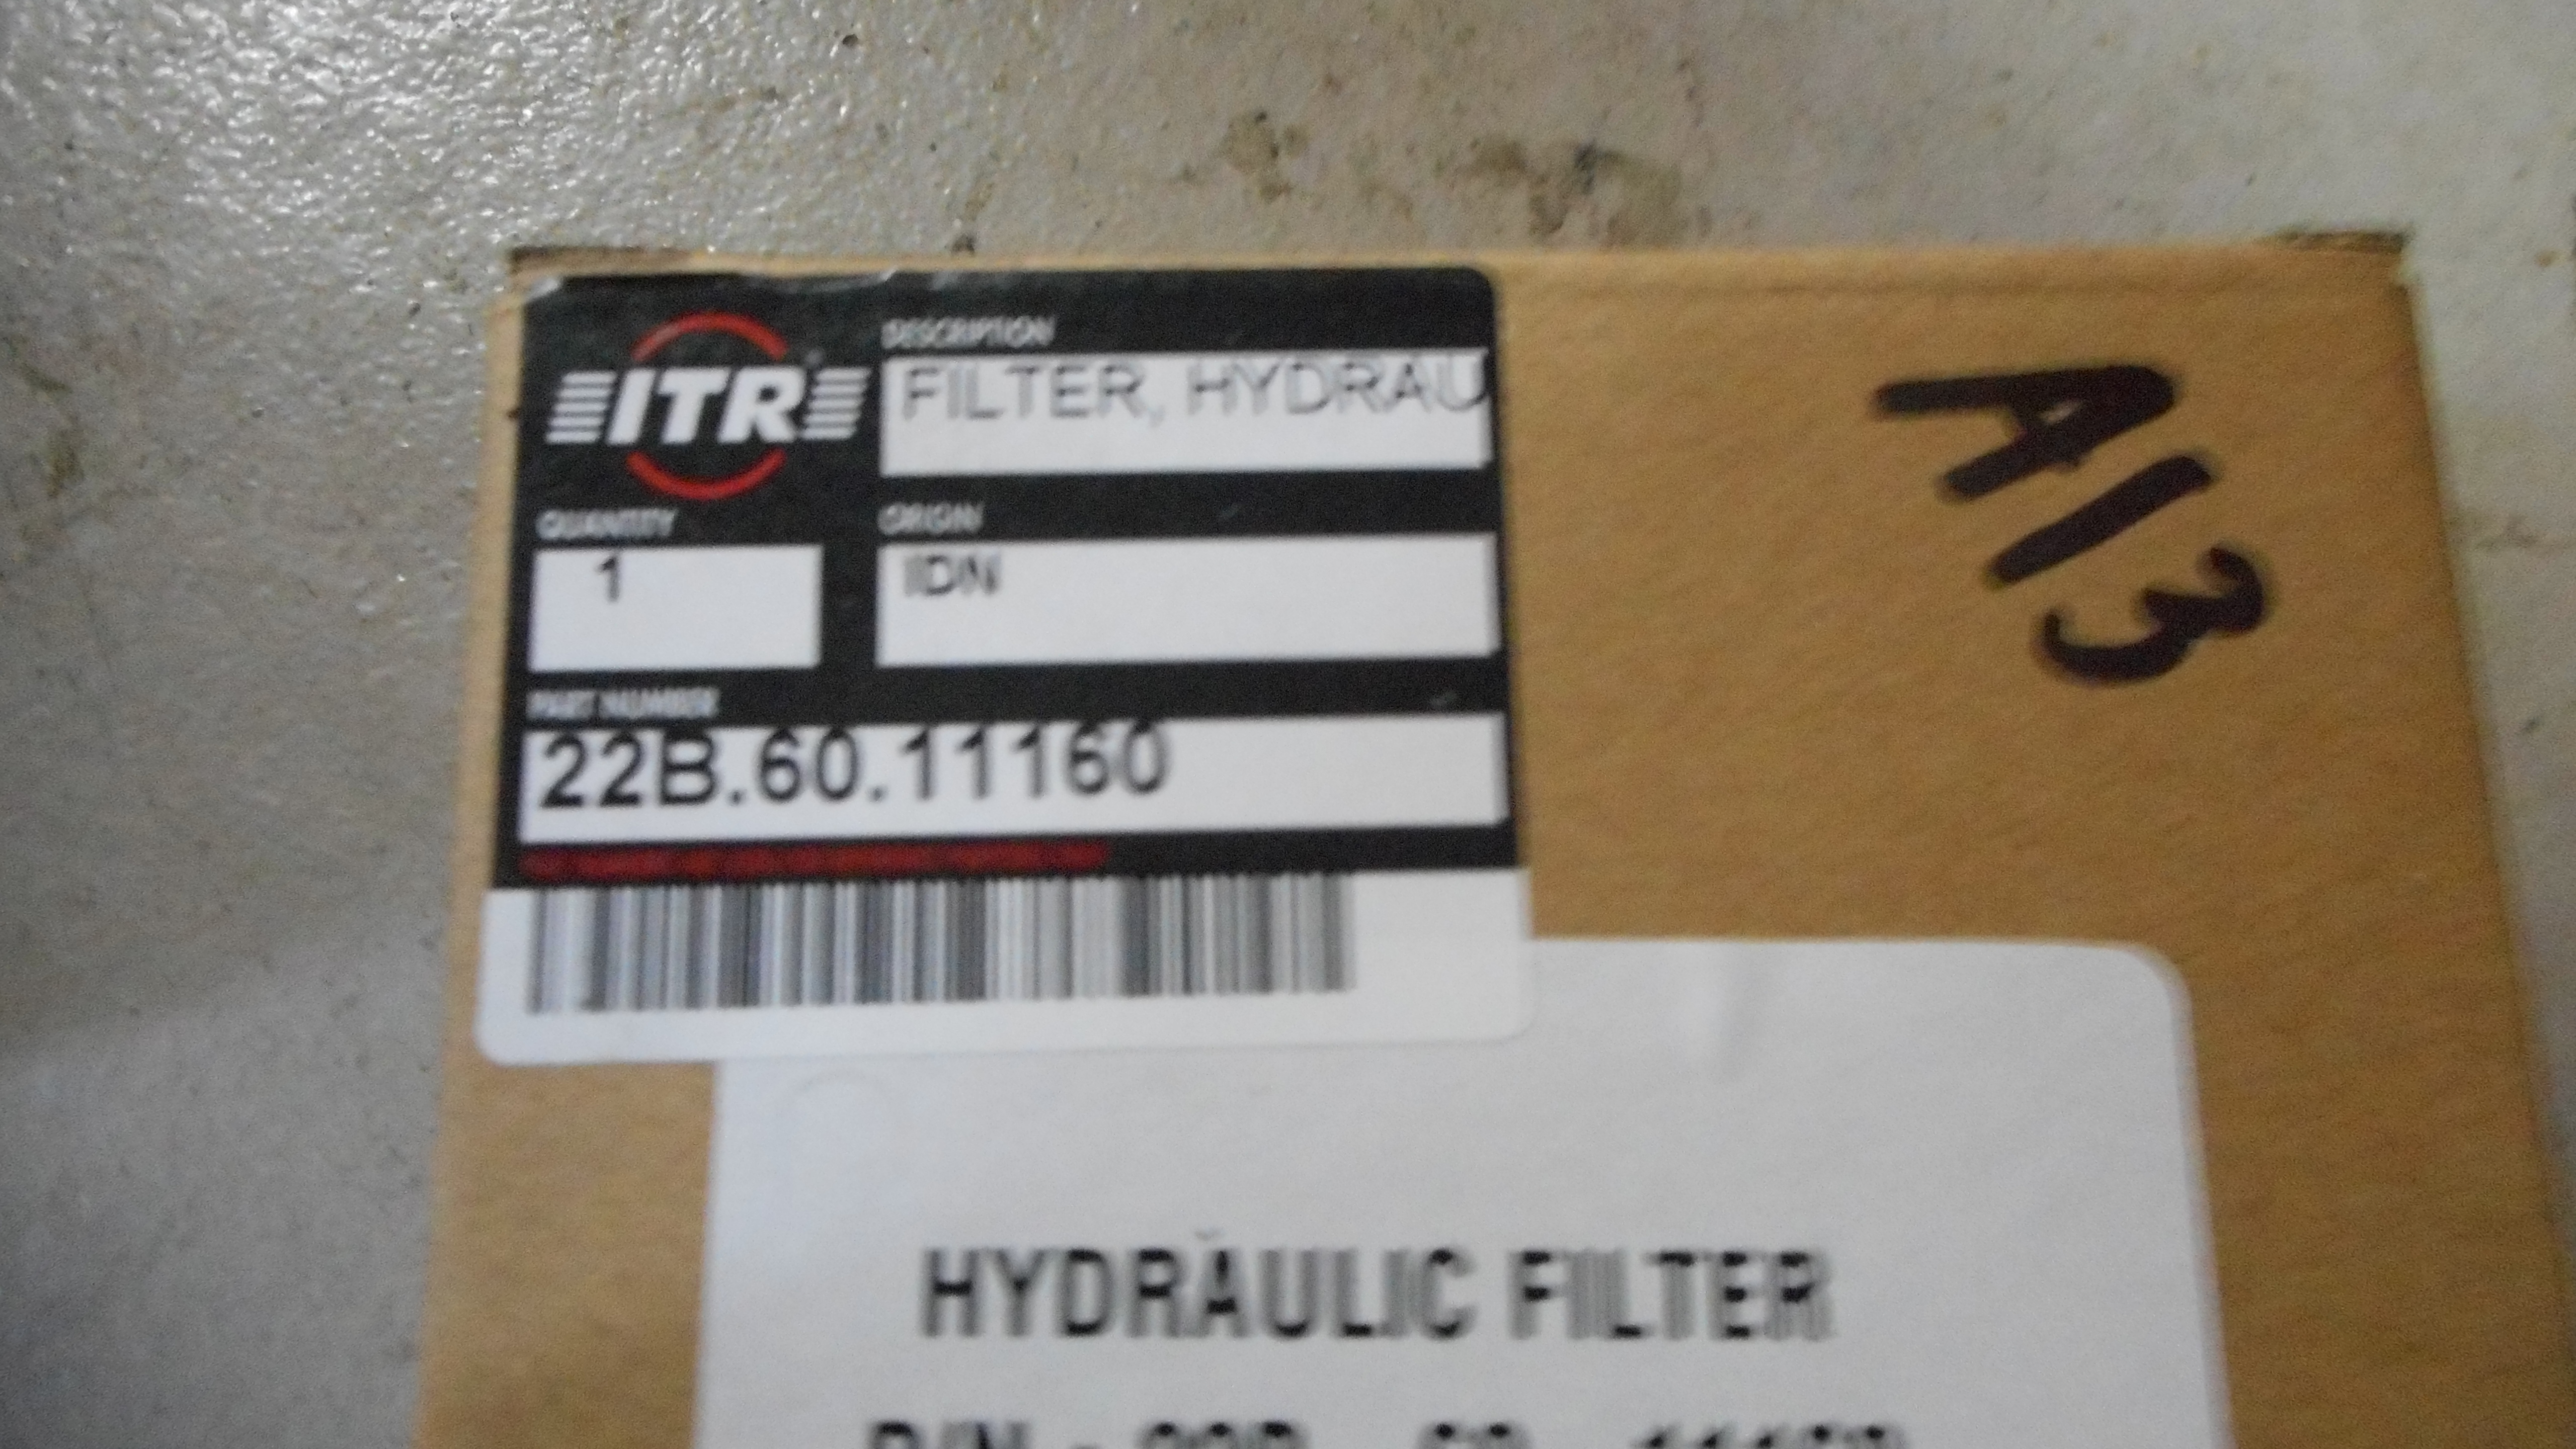 Hydraulic filter ITR 22B-60-11160